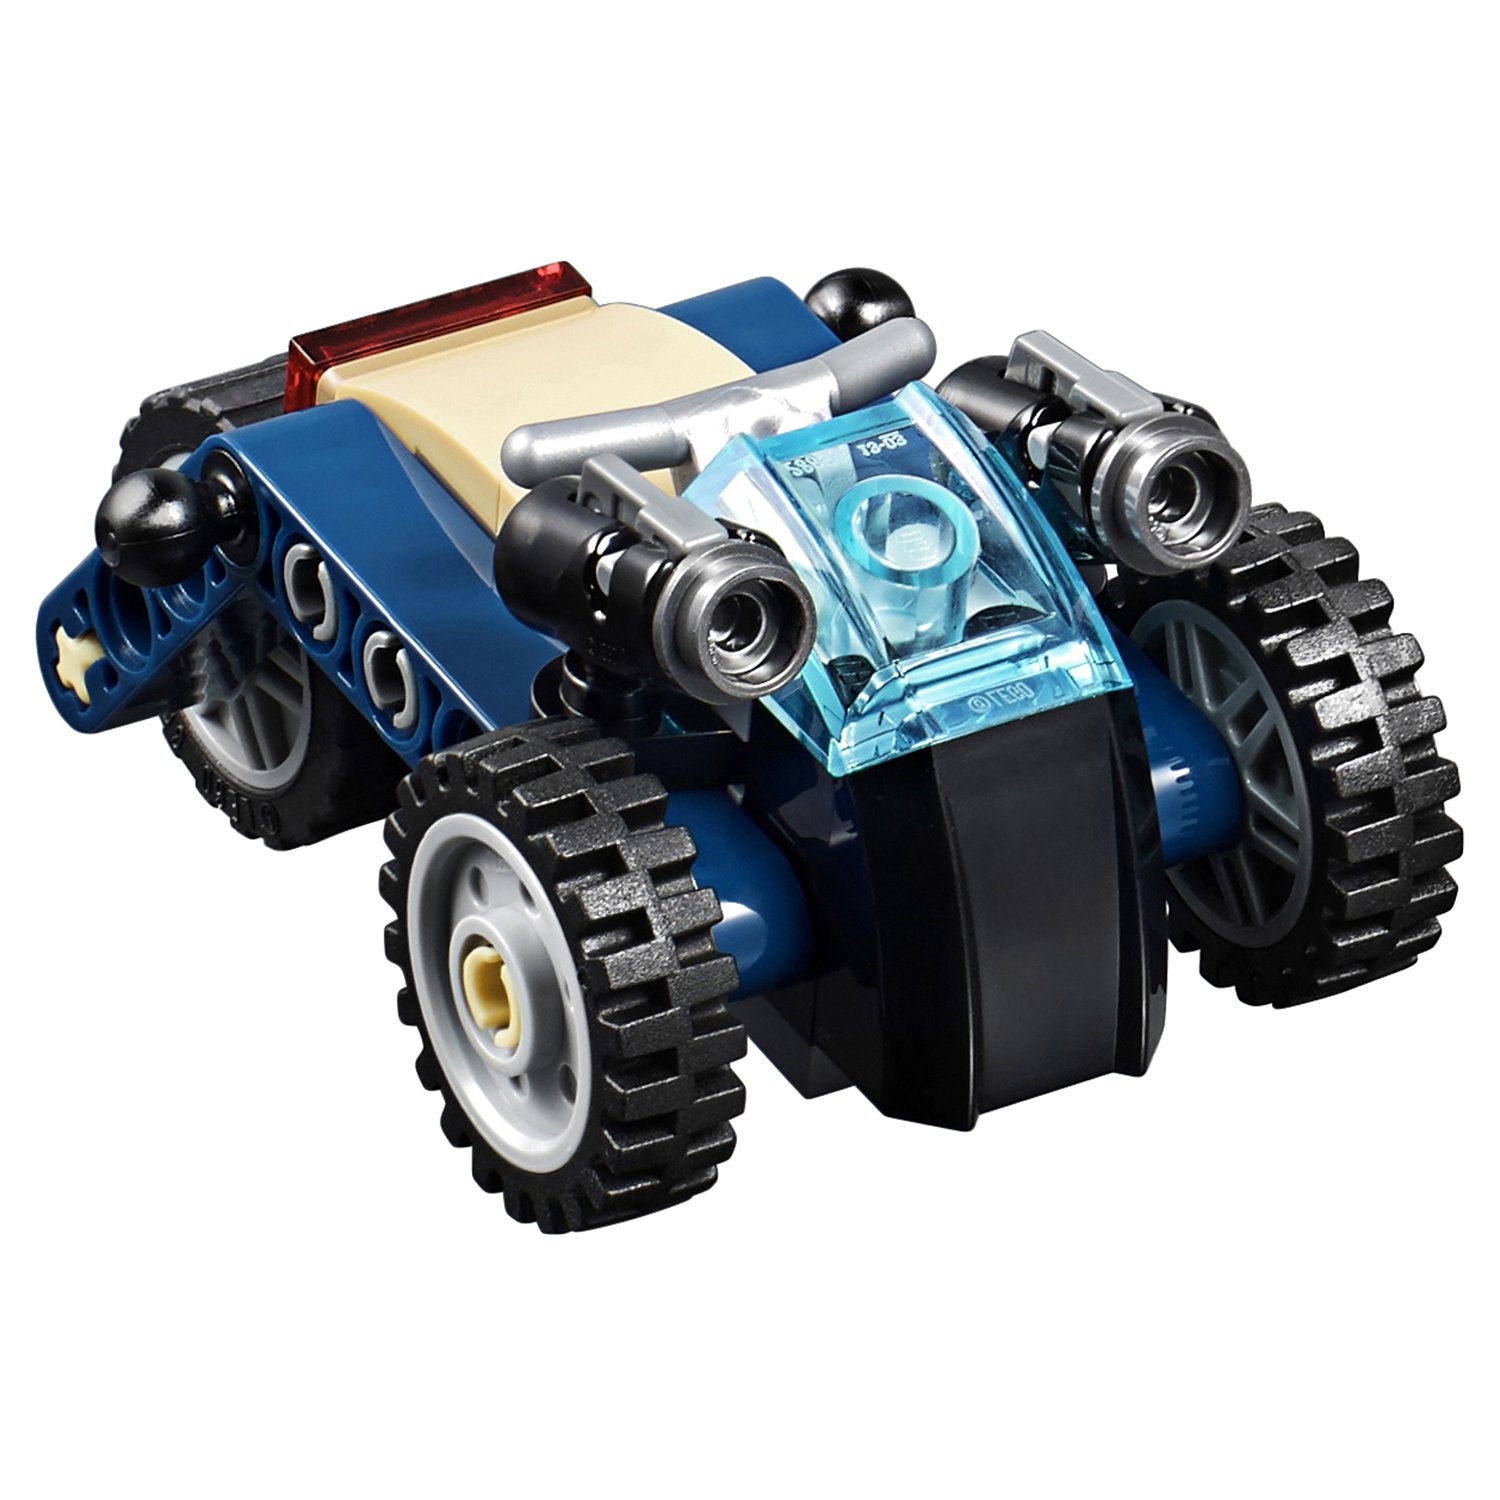 Конструктор LEGO Super Heroes «Модернизированный квинджет Мстителей» 76126